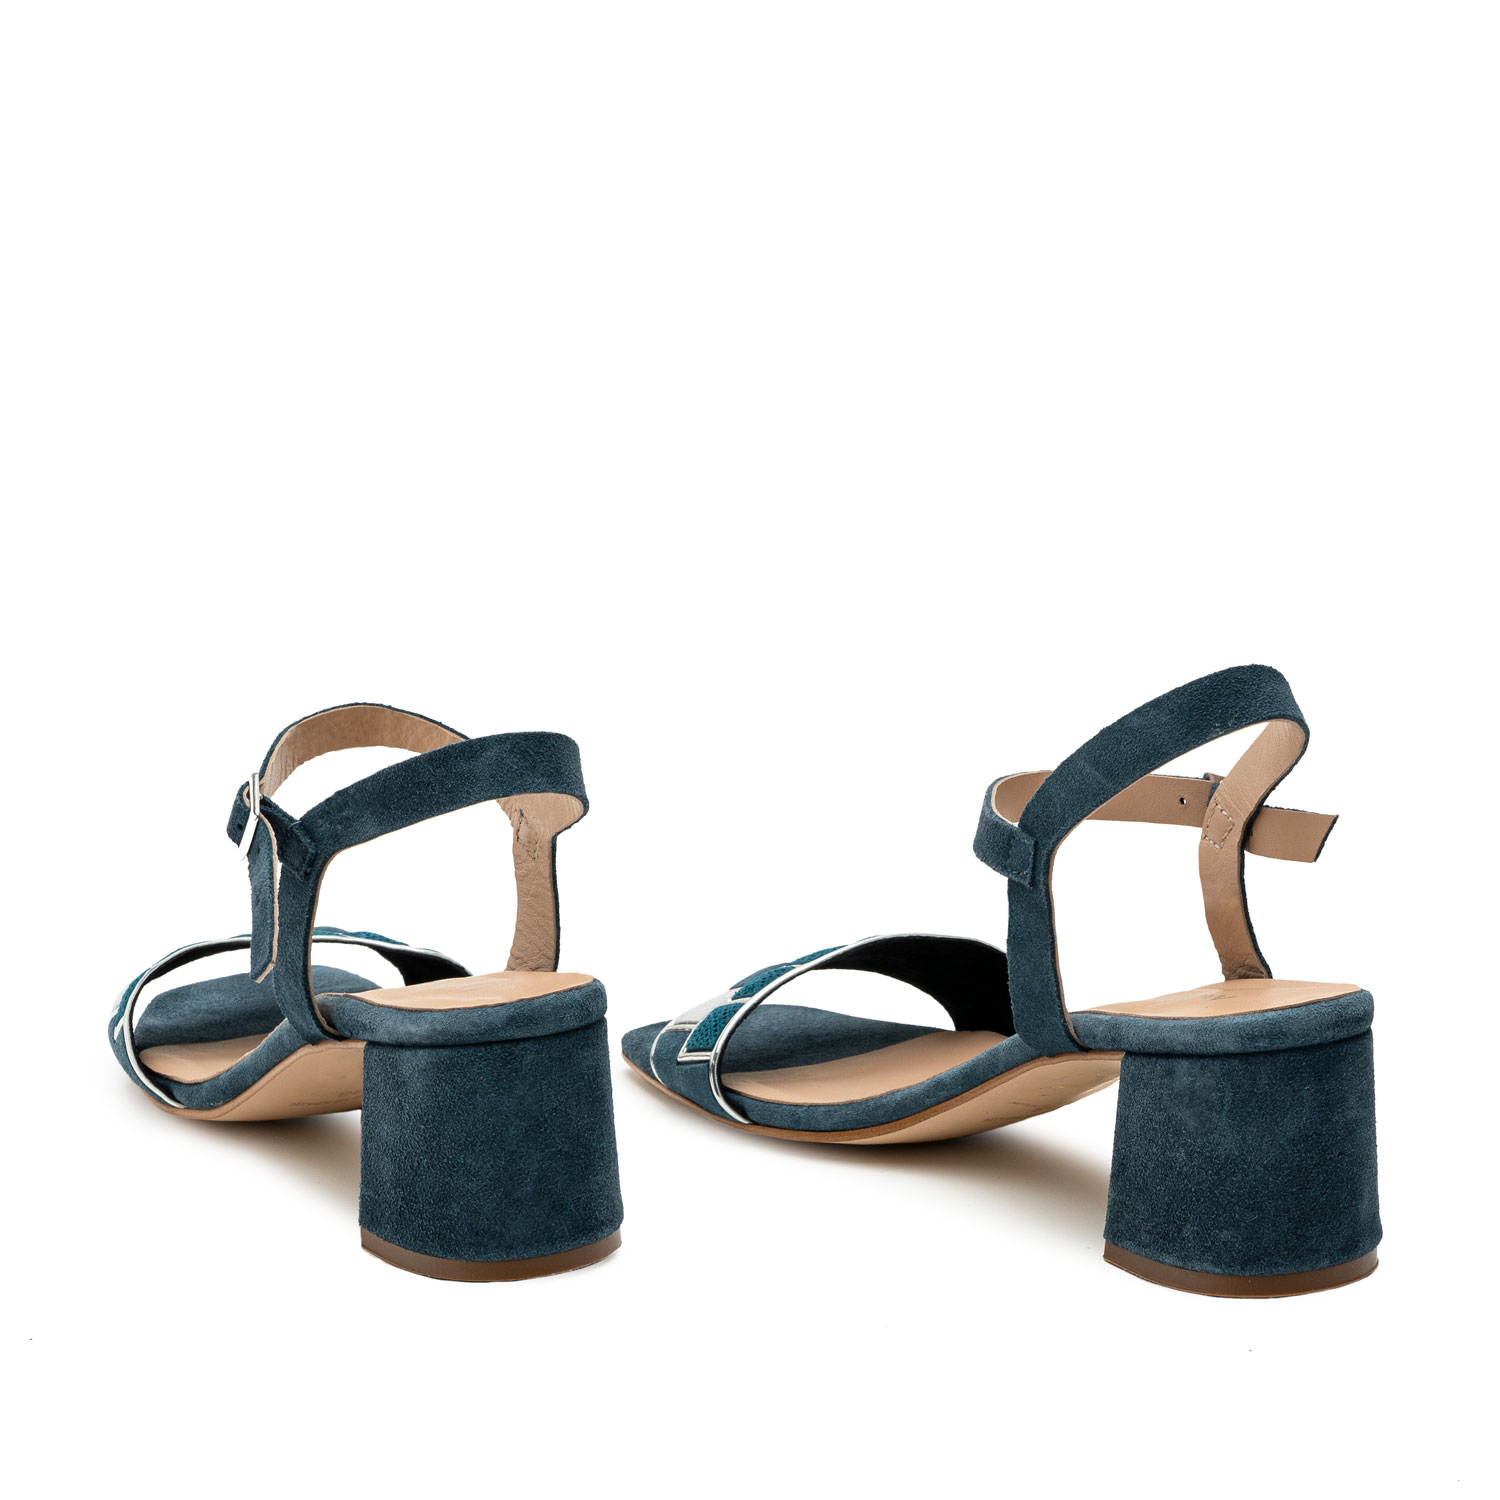 Sandalen aus blauem Rauleder - MADE IN SPAIN - 